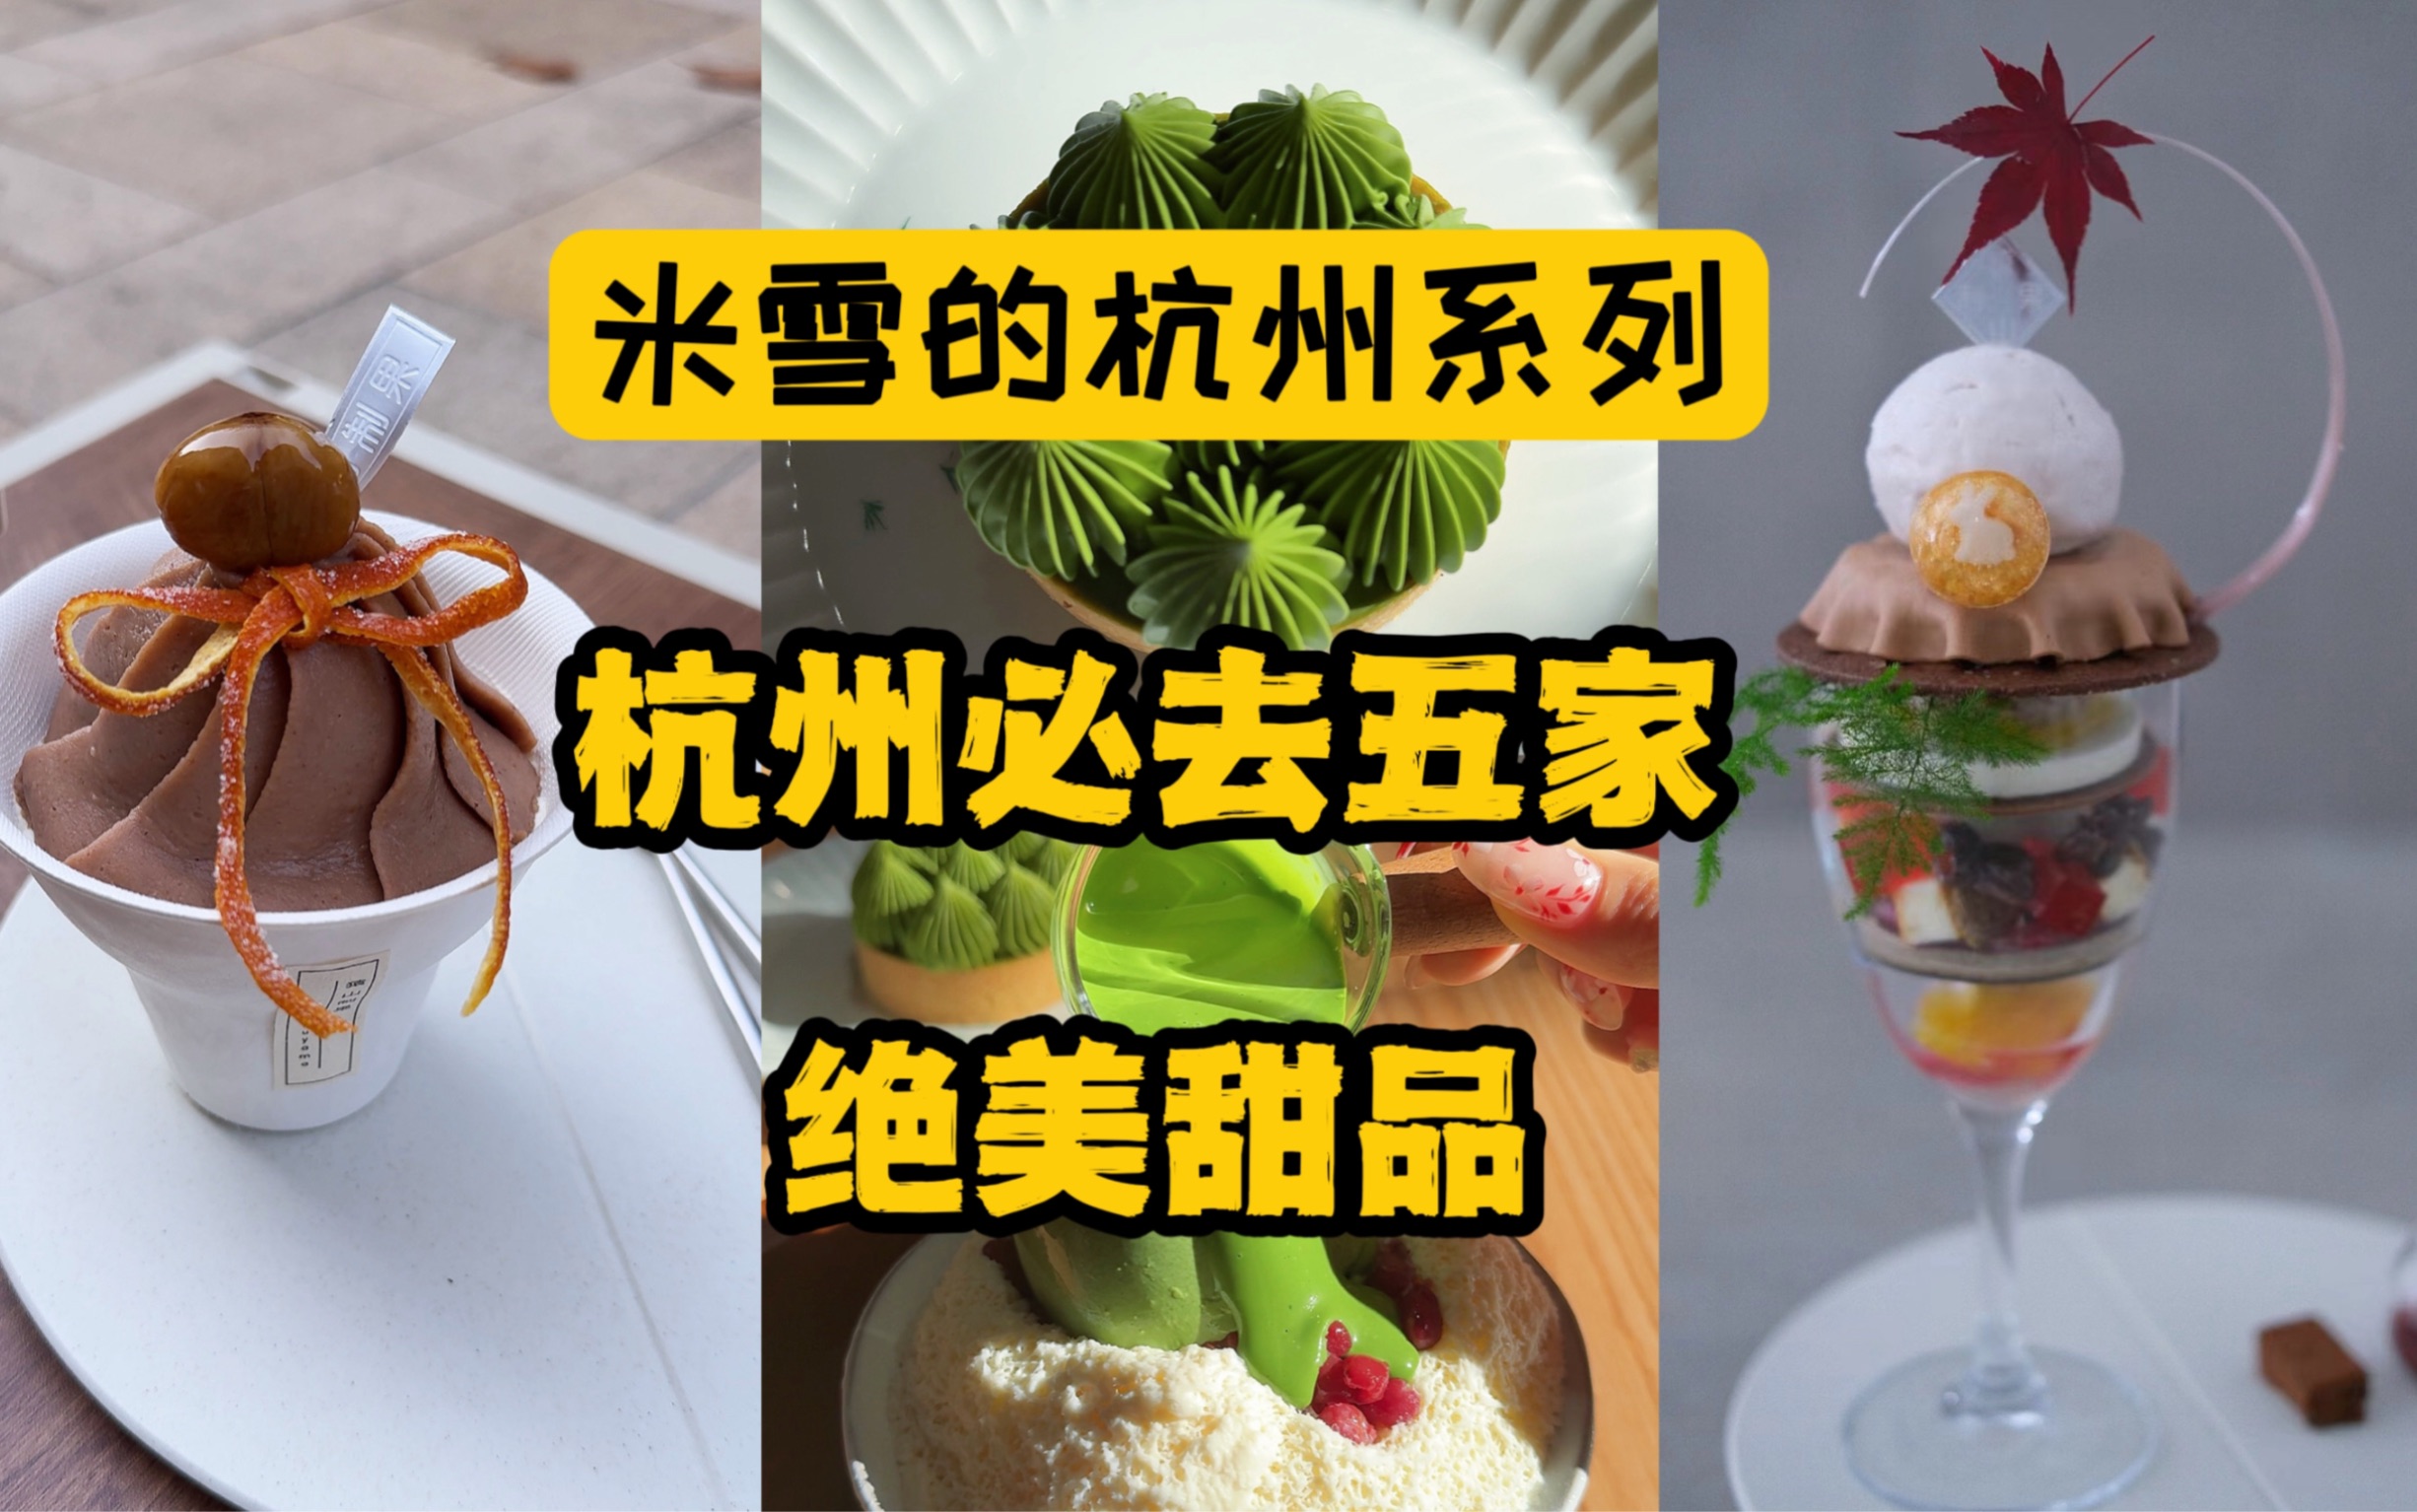 杭州甜品领先上海至少五年，一集告诉你五家王炸！来杭州必打卡（猿山制果，petit yanran patisserie，猫里有甜，RUSON鹿松，富贵面包公司）